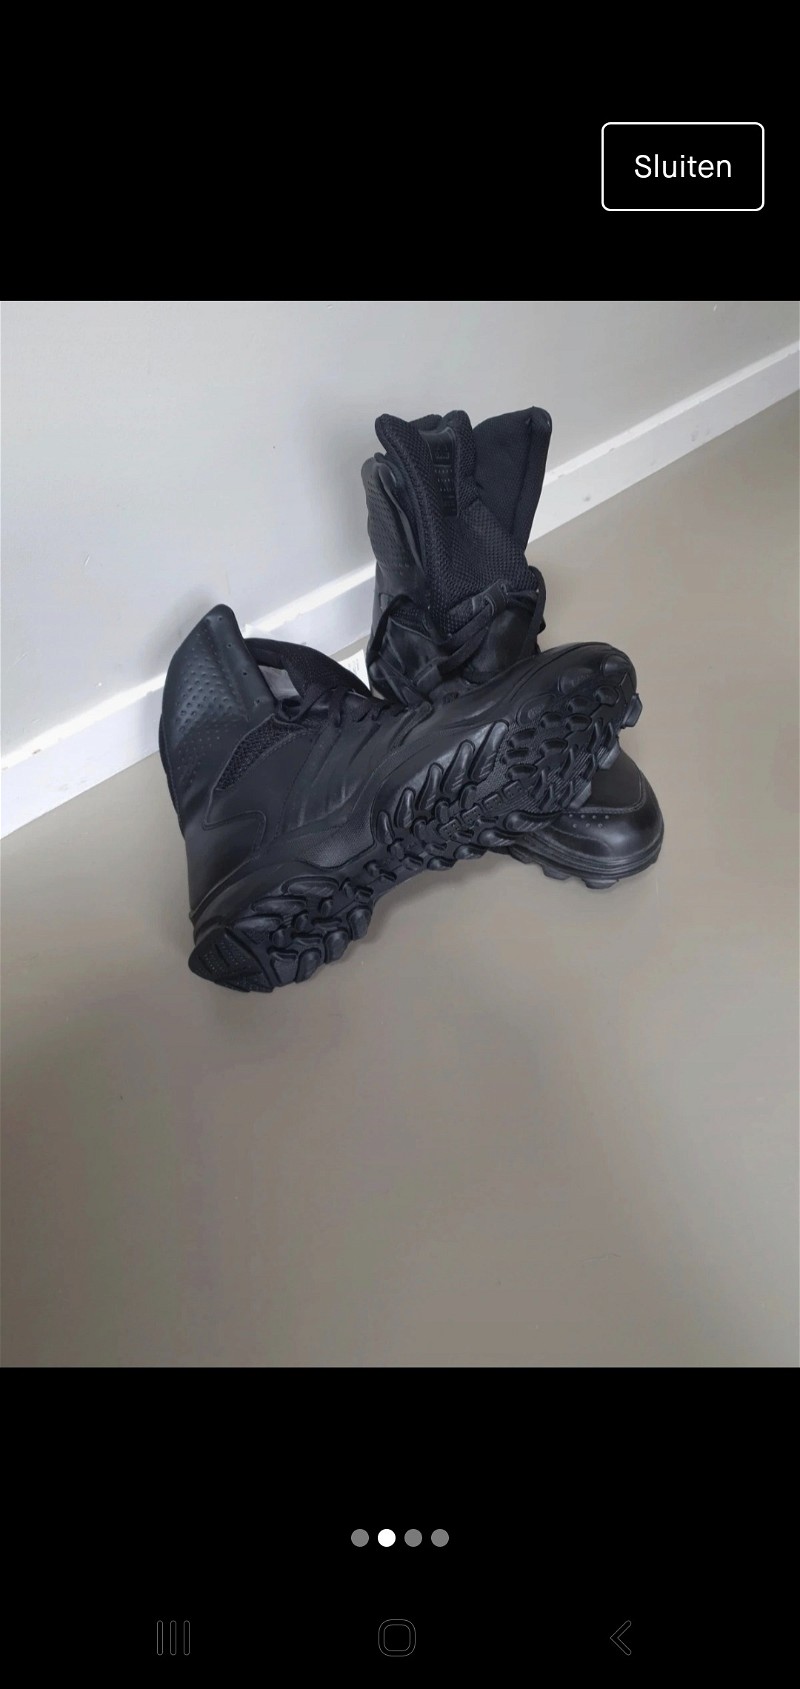 Image 1 for Adidas gsg 9.2 schoenen 45 kisten politie dsi defensie